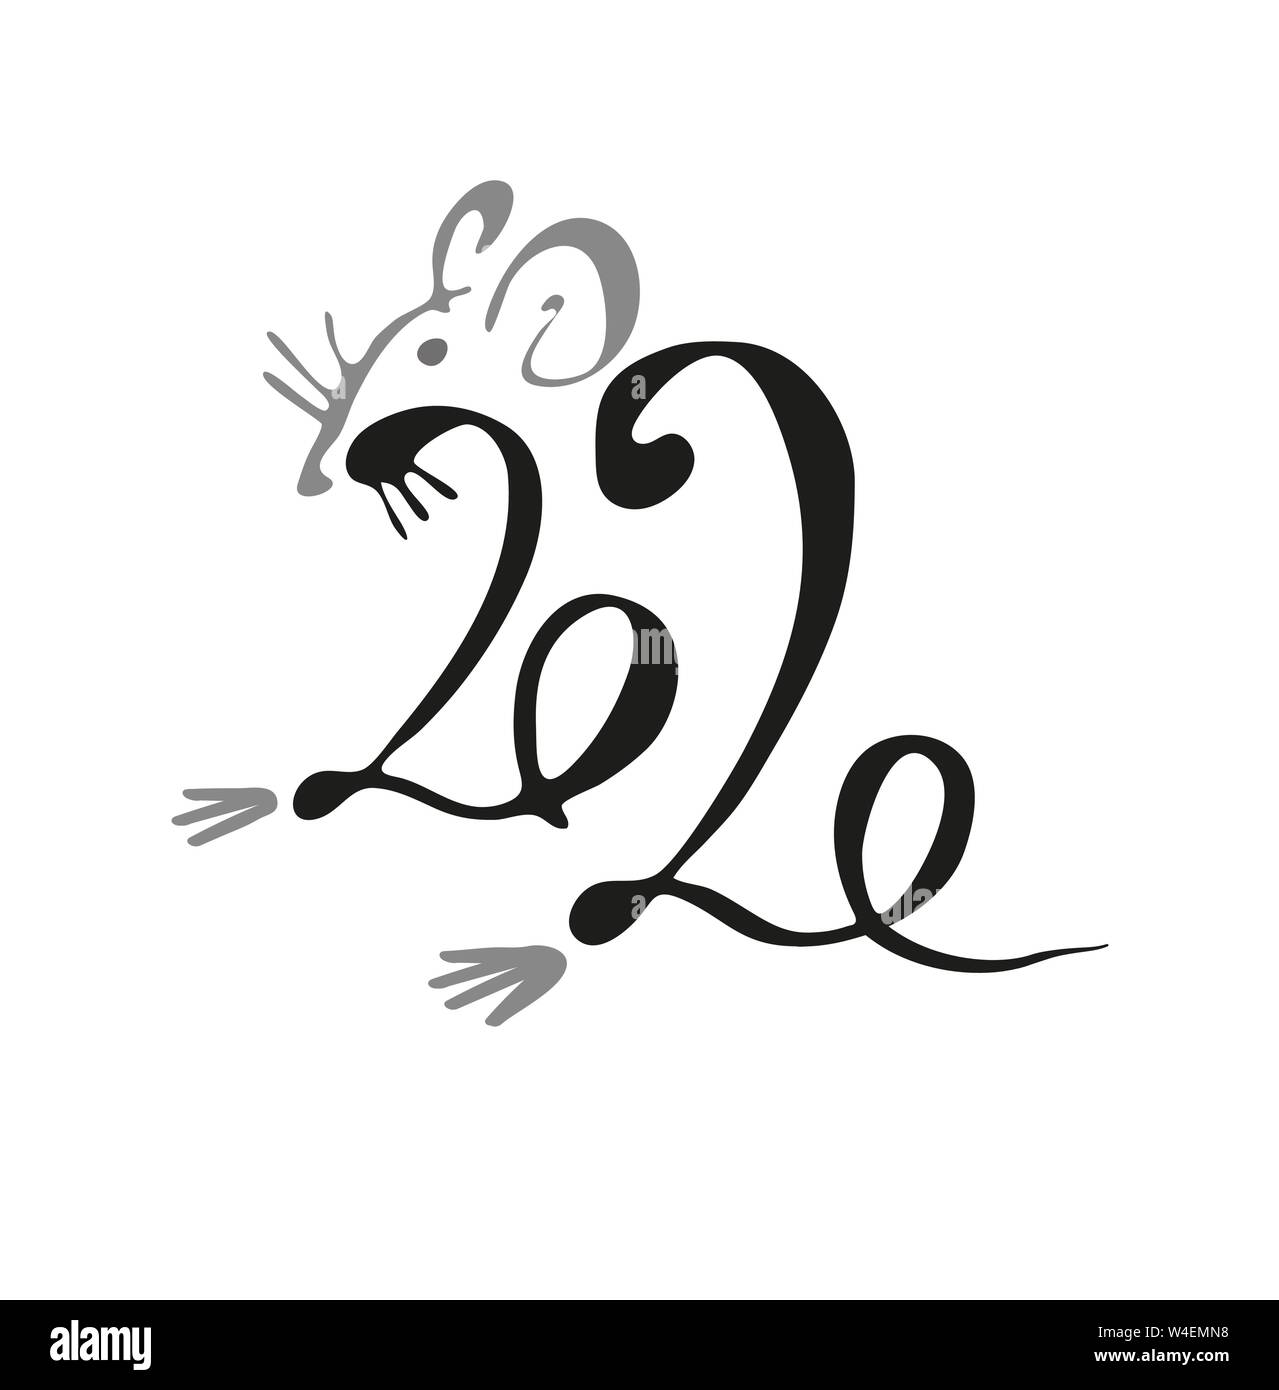 2020. L'inscription avec un rat. La calligraphie. Le nouvel an chinois 2020. Vector illustration isolé sur fond blanc. Illustration de Vecteur